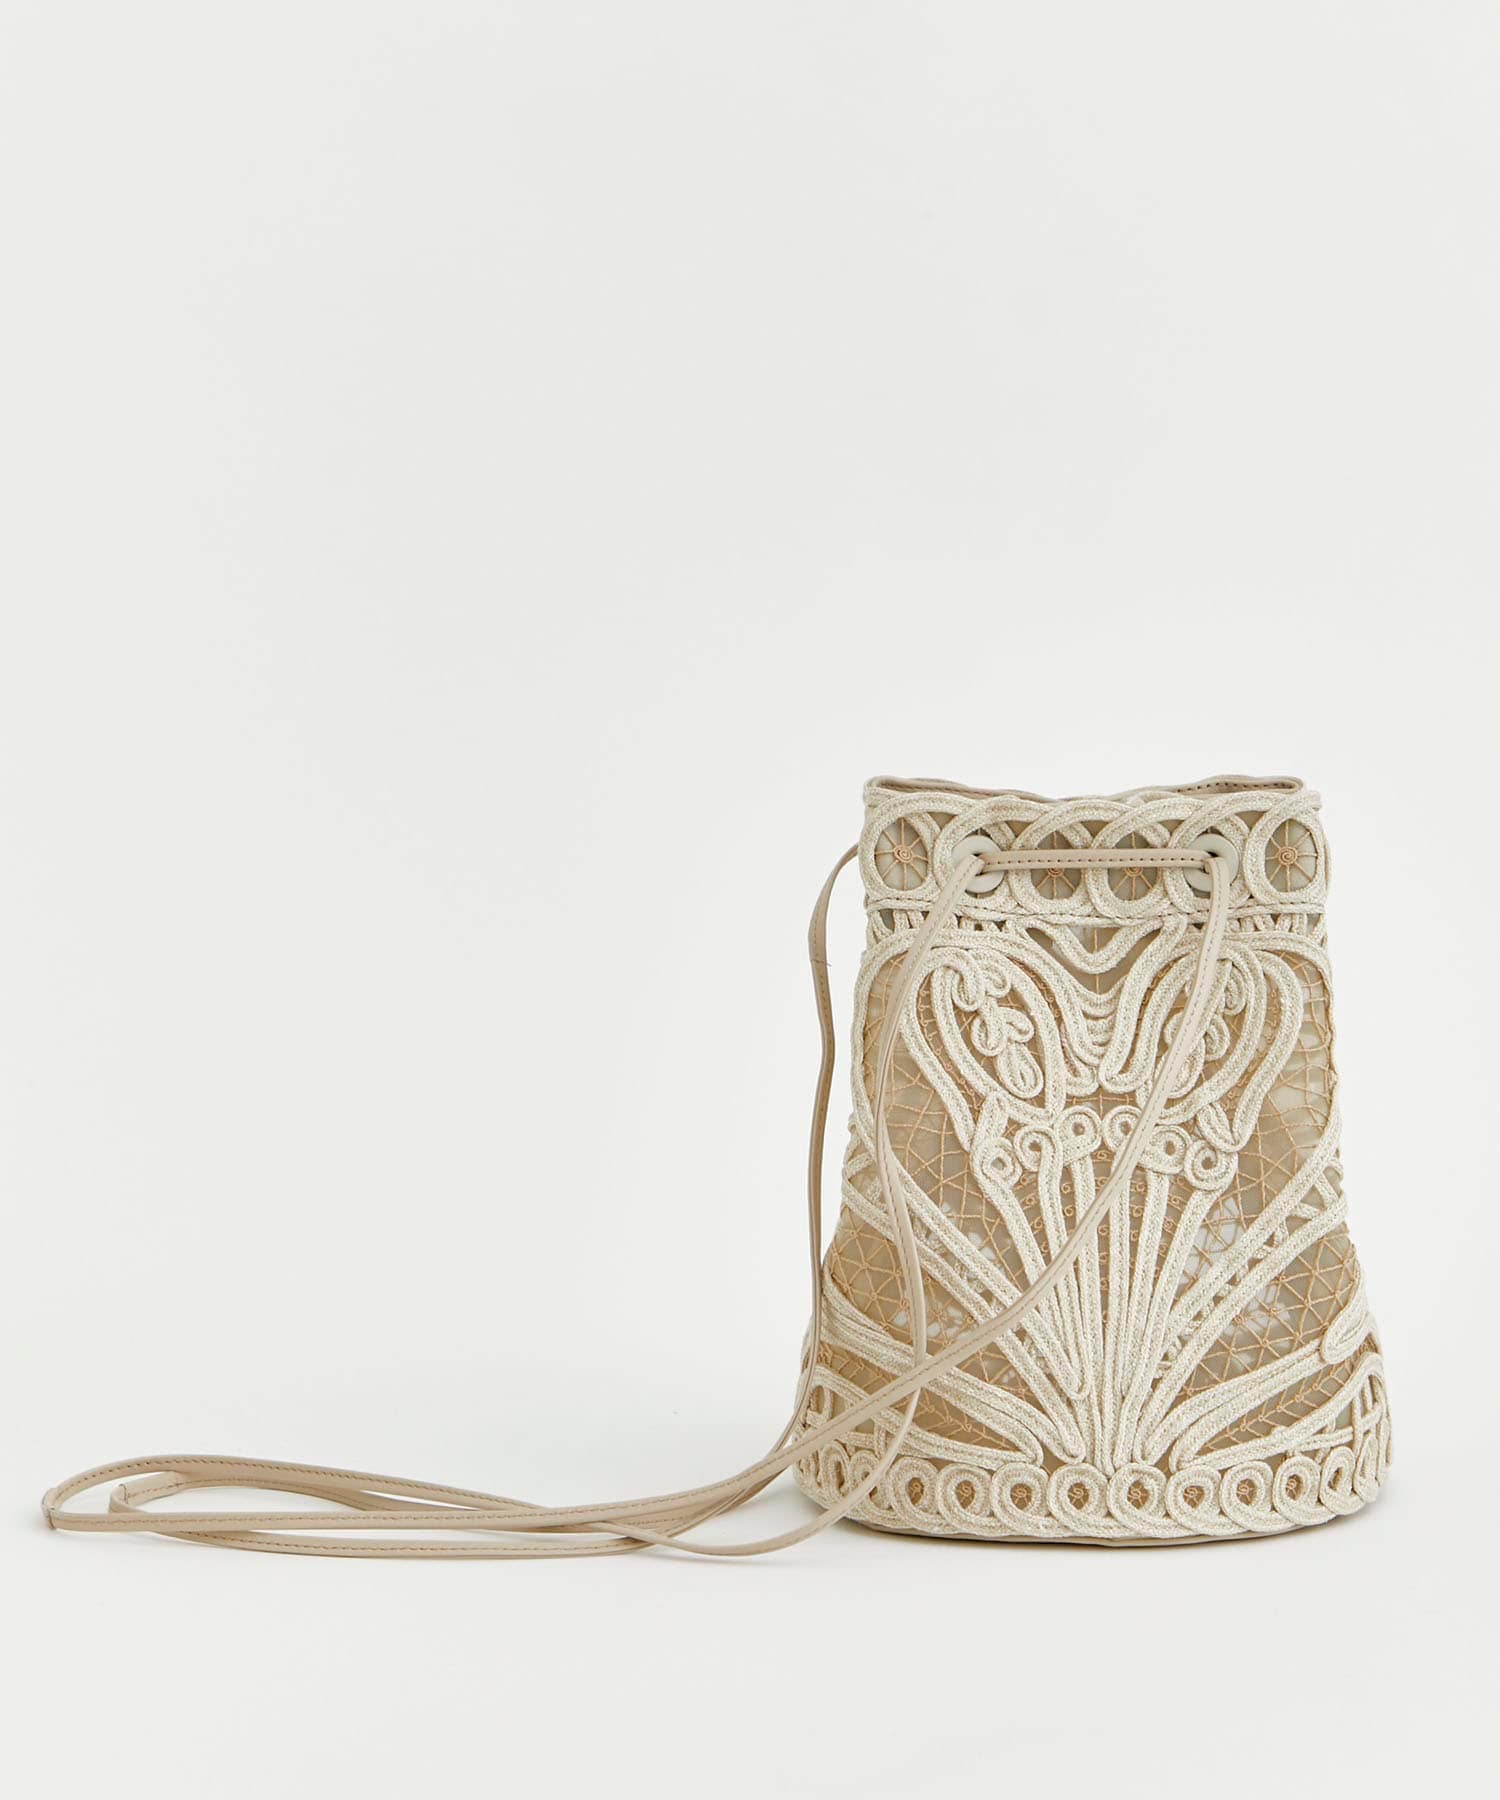 Cording Embroidery Bucket Bag Mame Kurogouchi